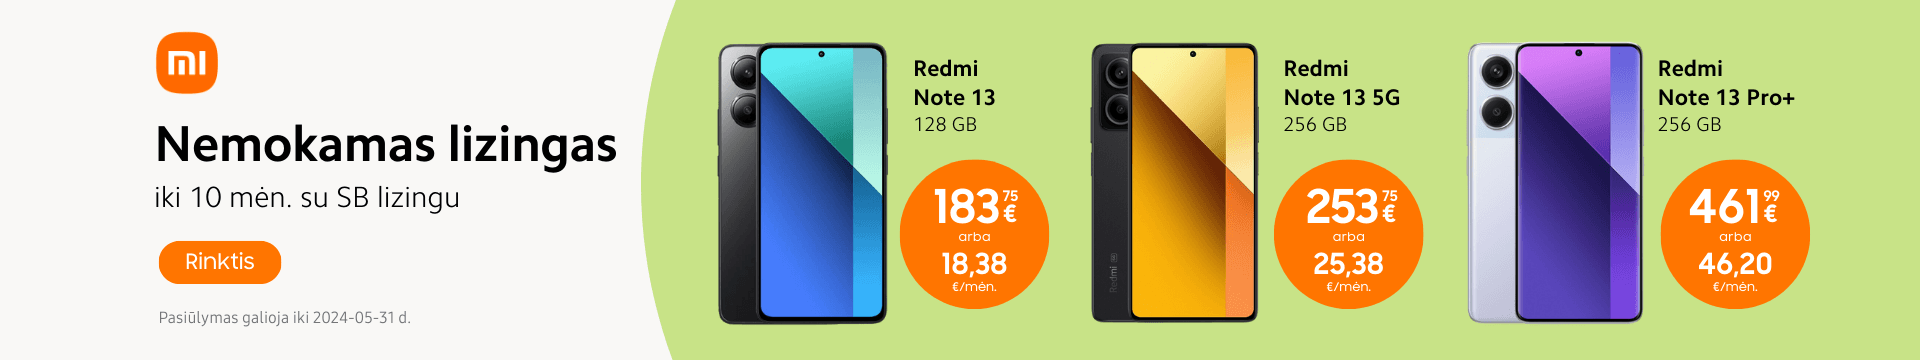 Xiaomi Redmi Note 13 serija lizingas be pabrangimo, Mobili prekyba